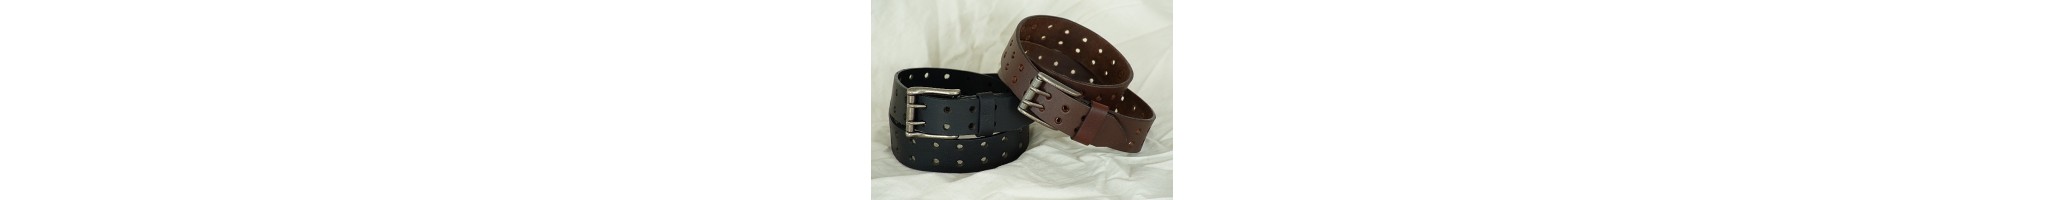 Belts & Buckles